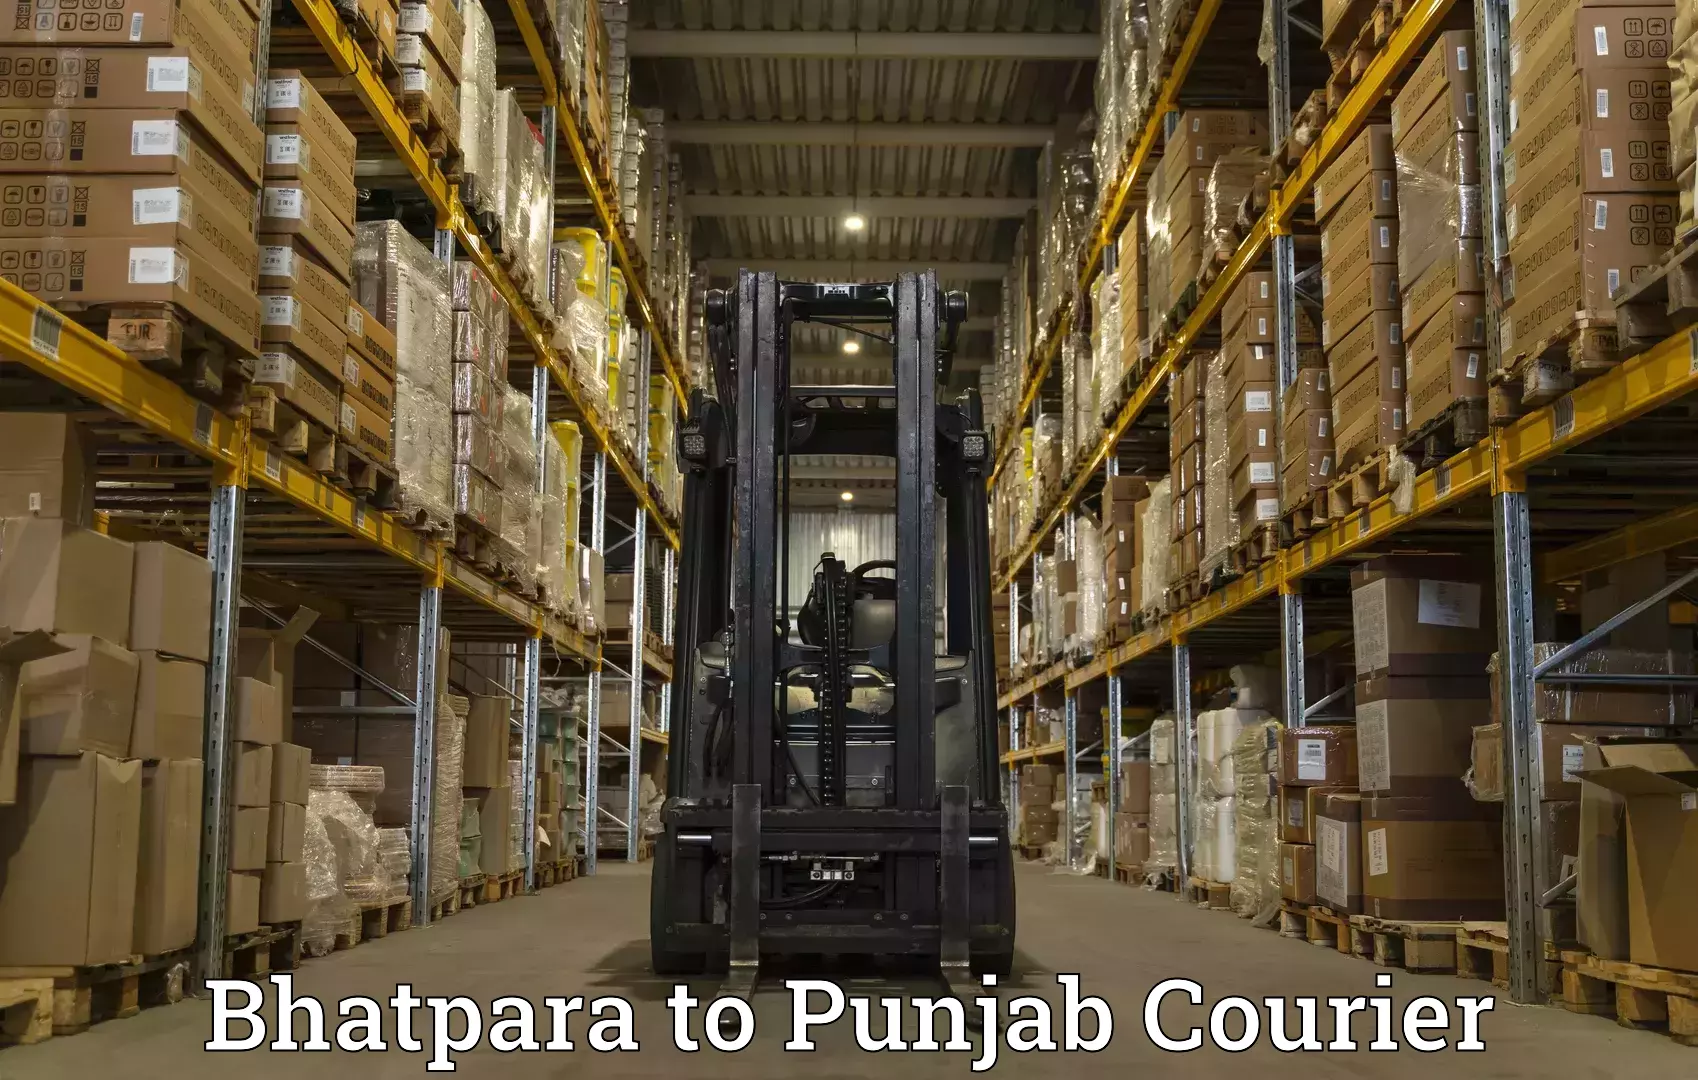 Customized shipping options Bhatpara to Malerkotla